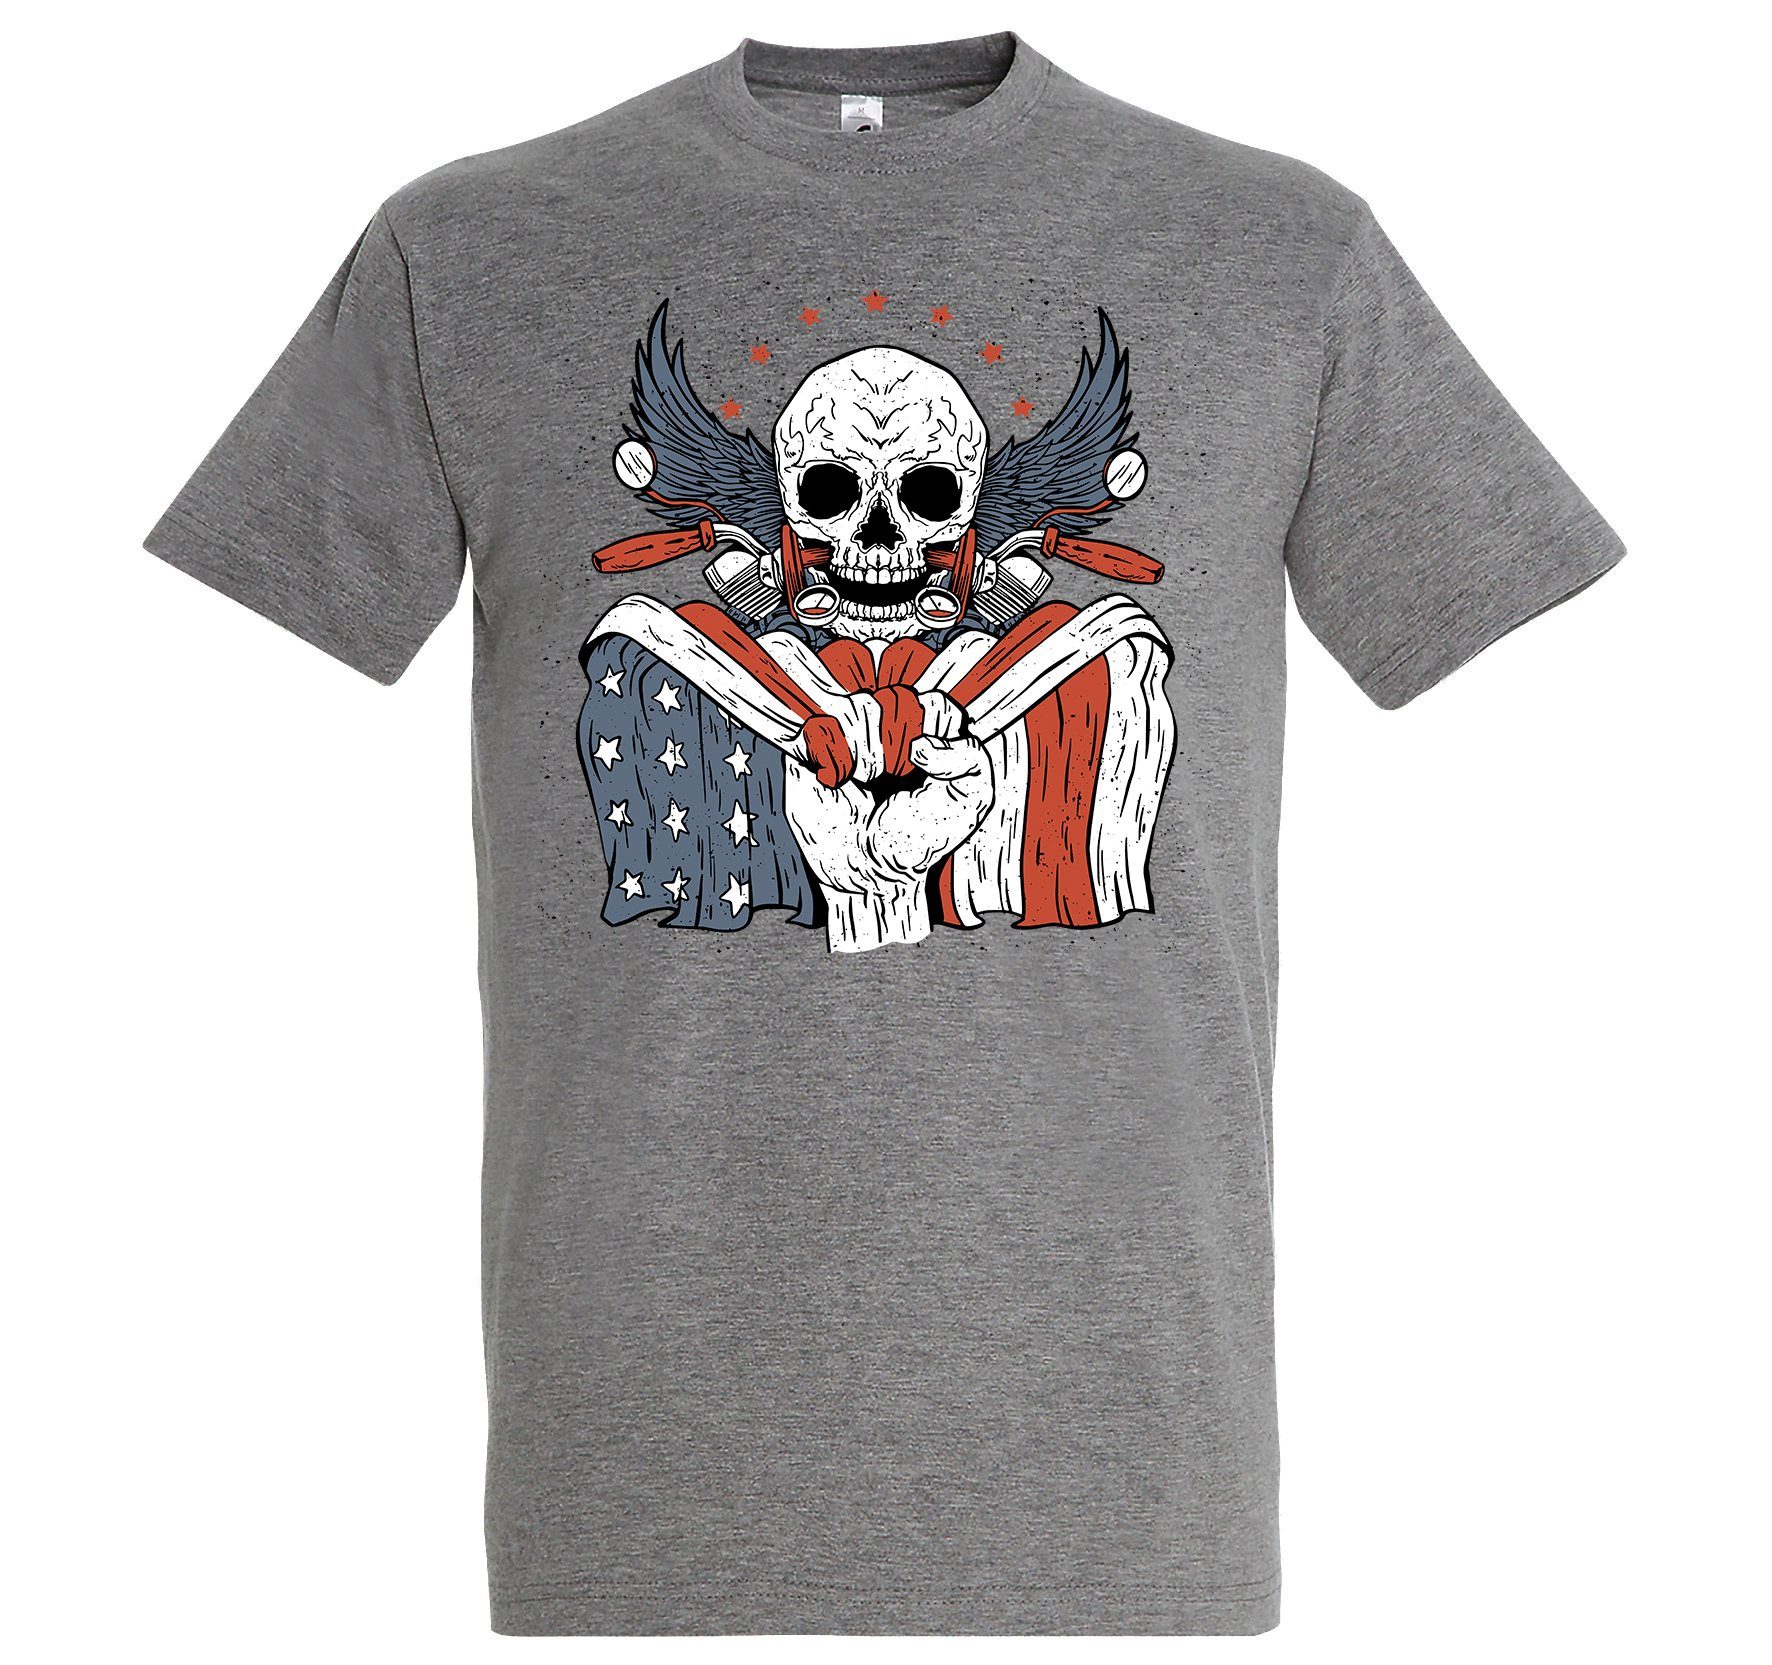 Youth Designz Print-Shirt T-Shirt Grau lustigem Skull Herren Aufdruck Biker Logo mit USA